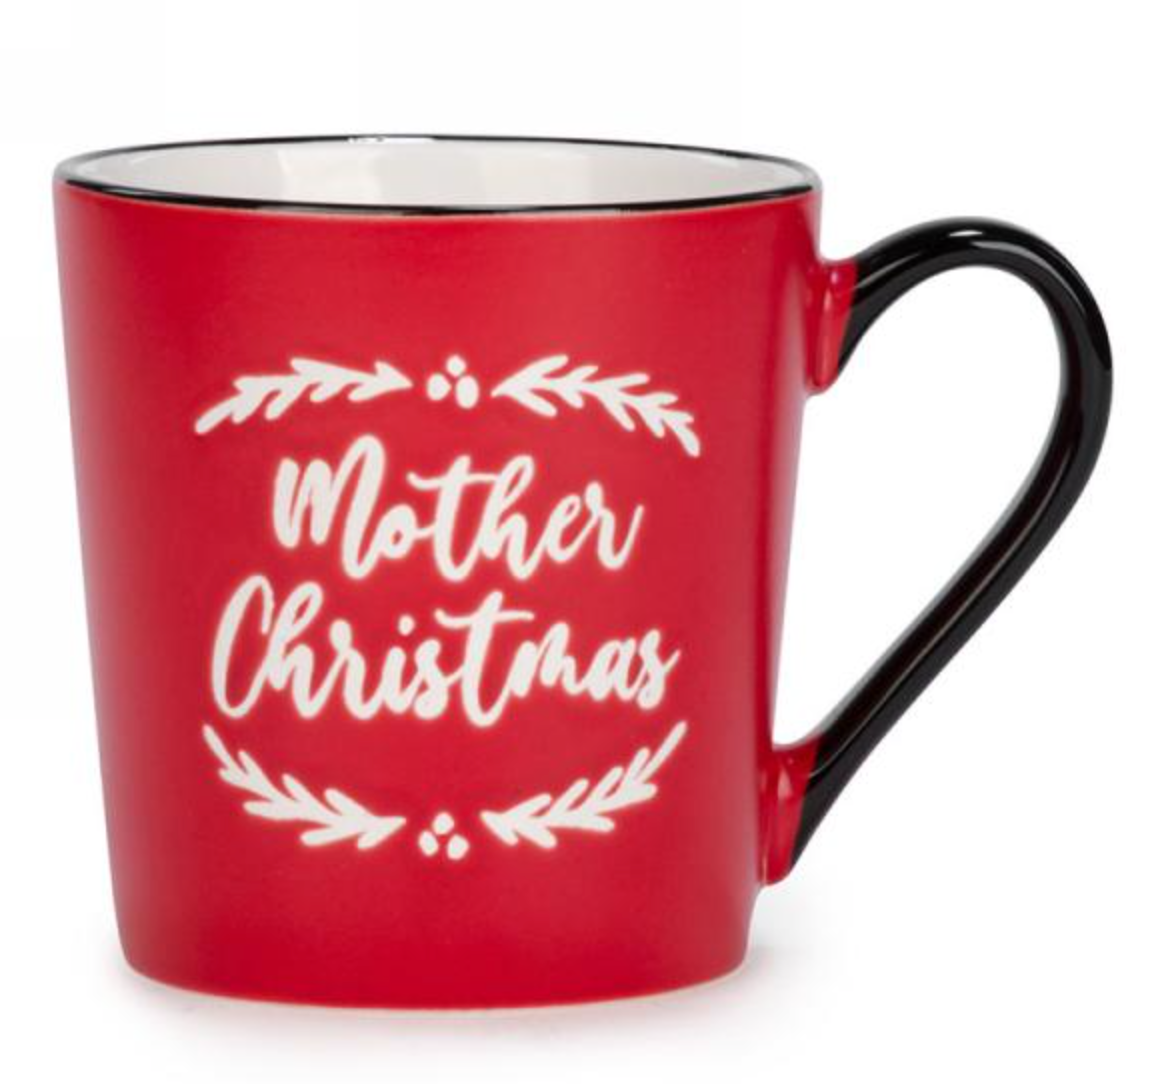 Mother or Father Christmas Mugs